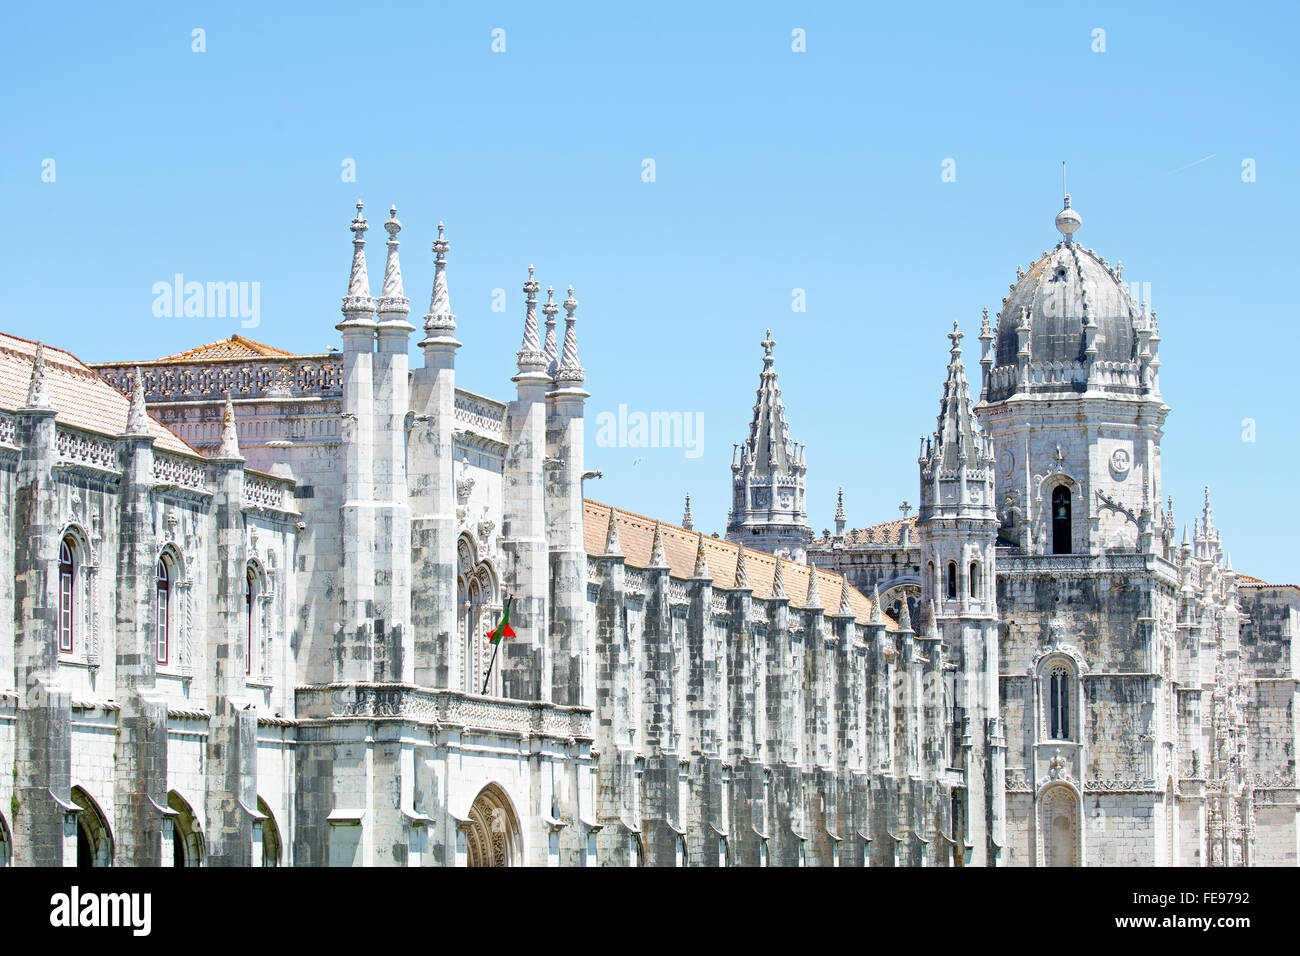 El Monasterio de San Jeronimos, es uno de los monumentos más famosos de Portugal, construido en el estilo manuelino. Foto de stock